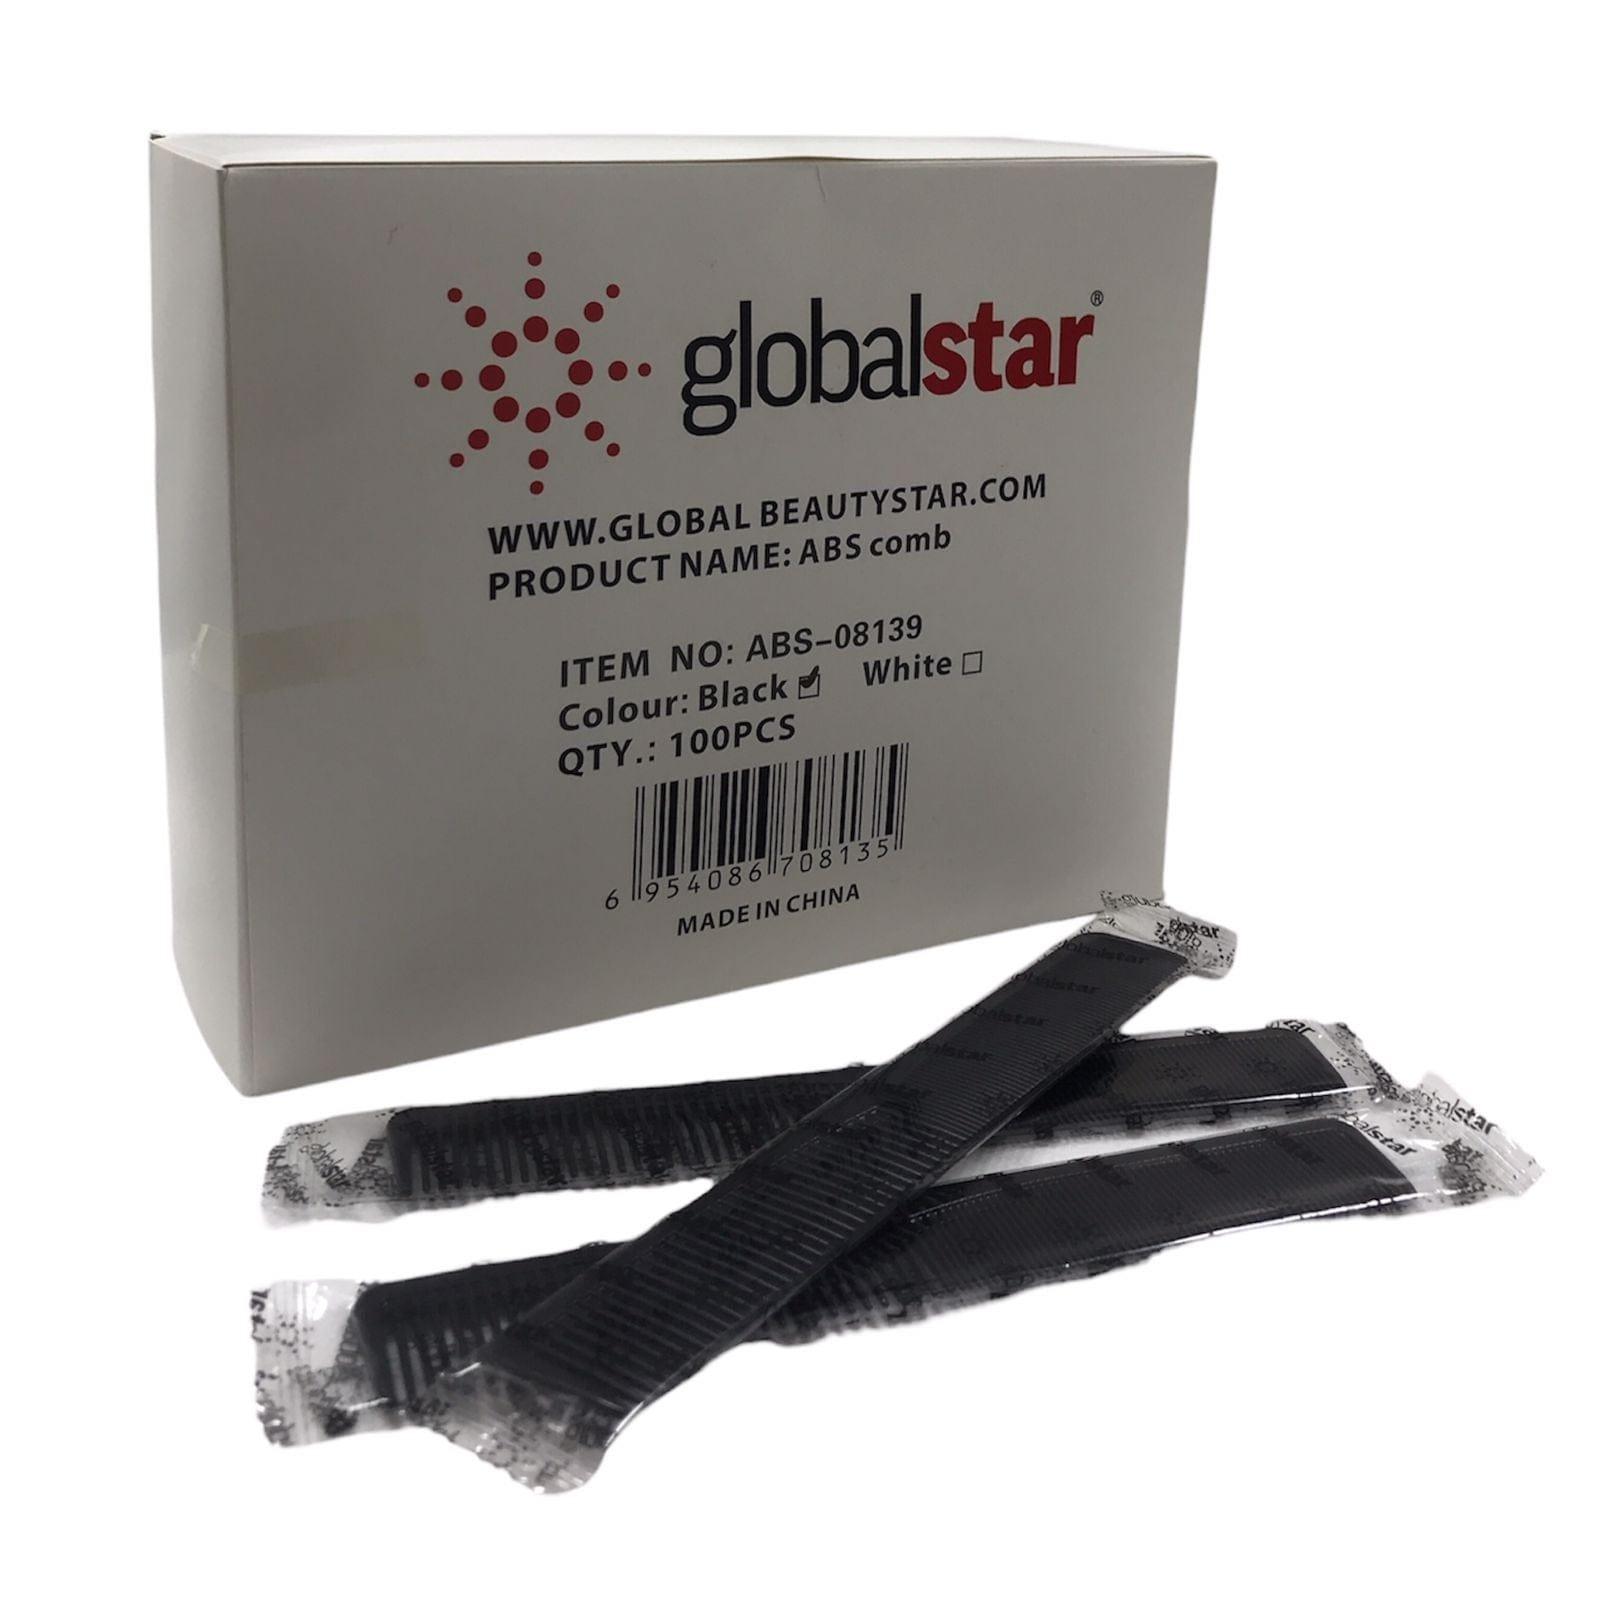 Globalstar Disposable Comb Black Big 100pcs ABS-08139